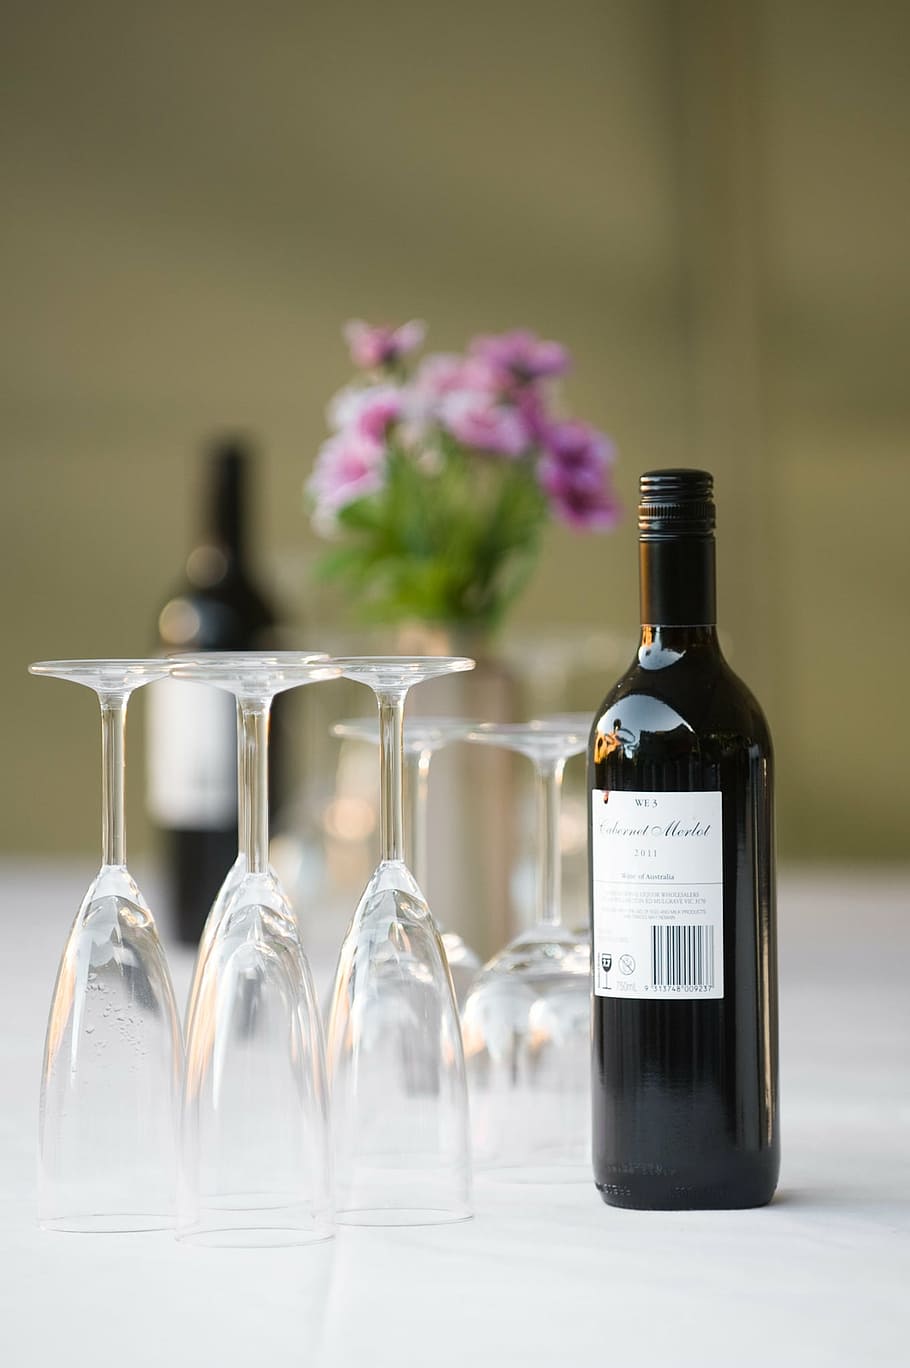 selectiva, fotografía de enfoque, botella de vino, vidrio, blanco, superficie, vino, comedor, restaurante, cena